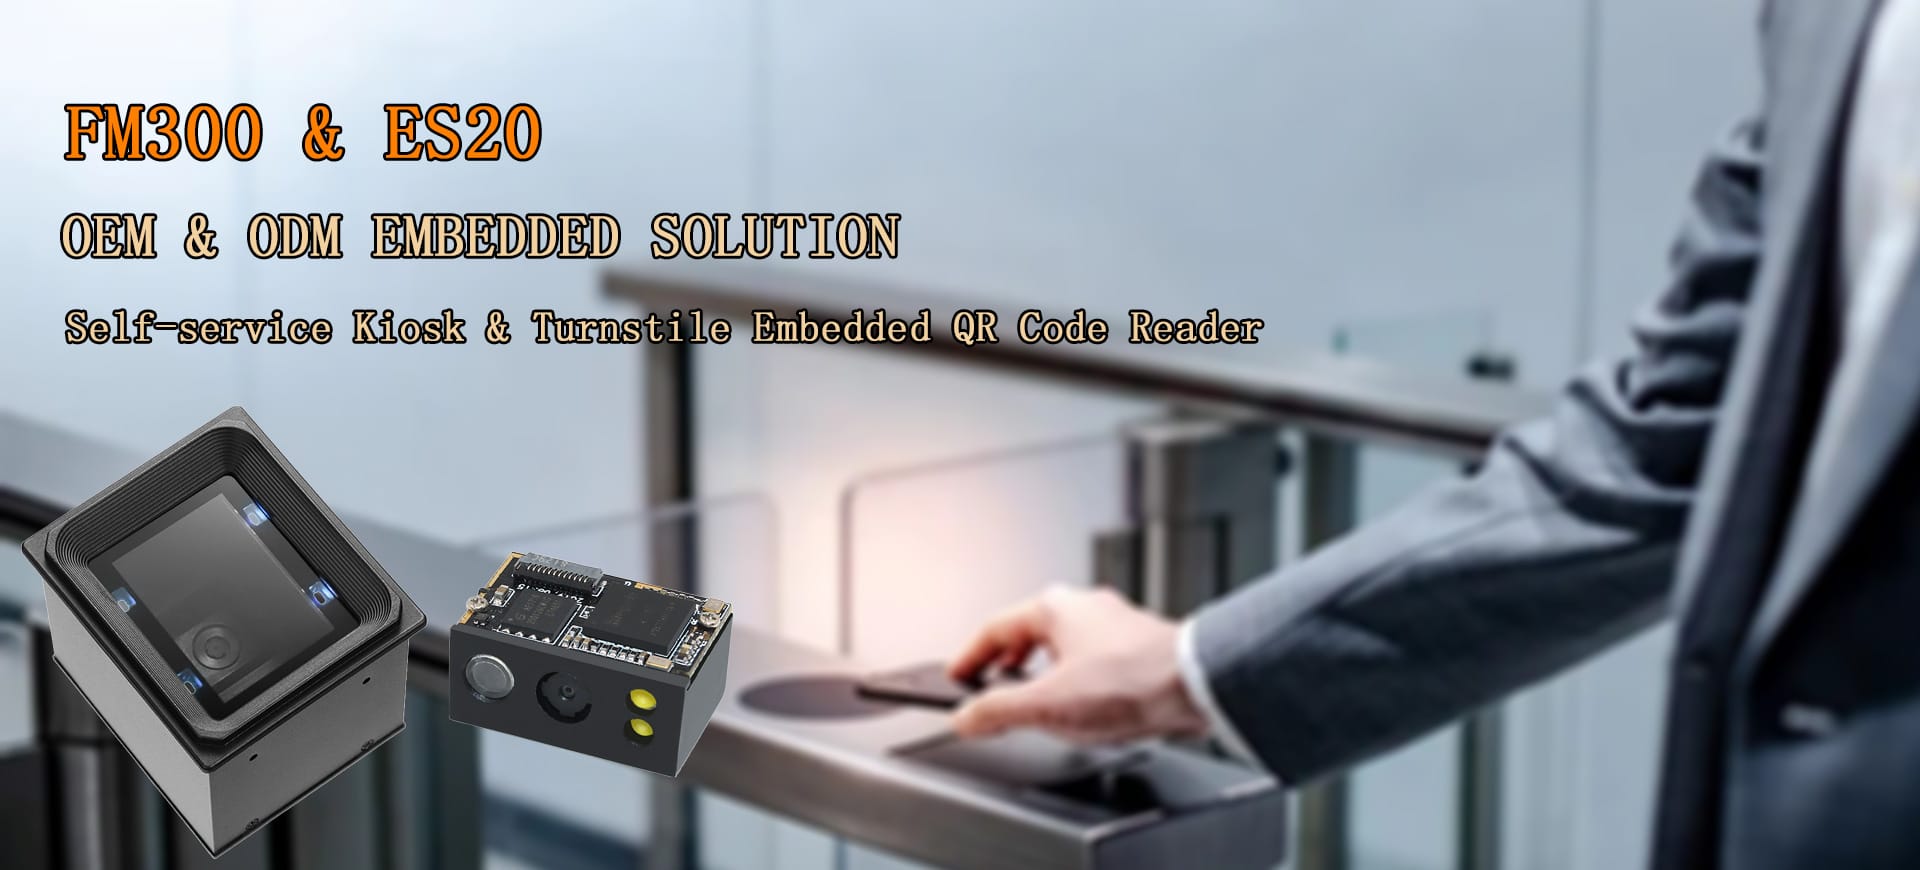 Barcodescanner FM300